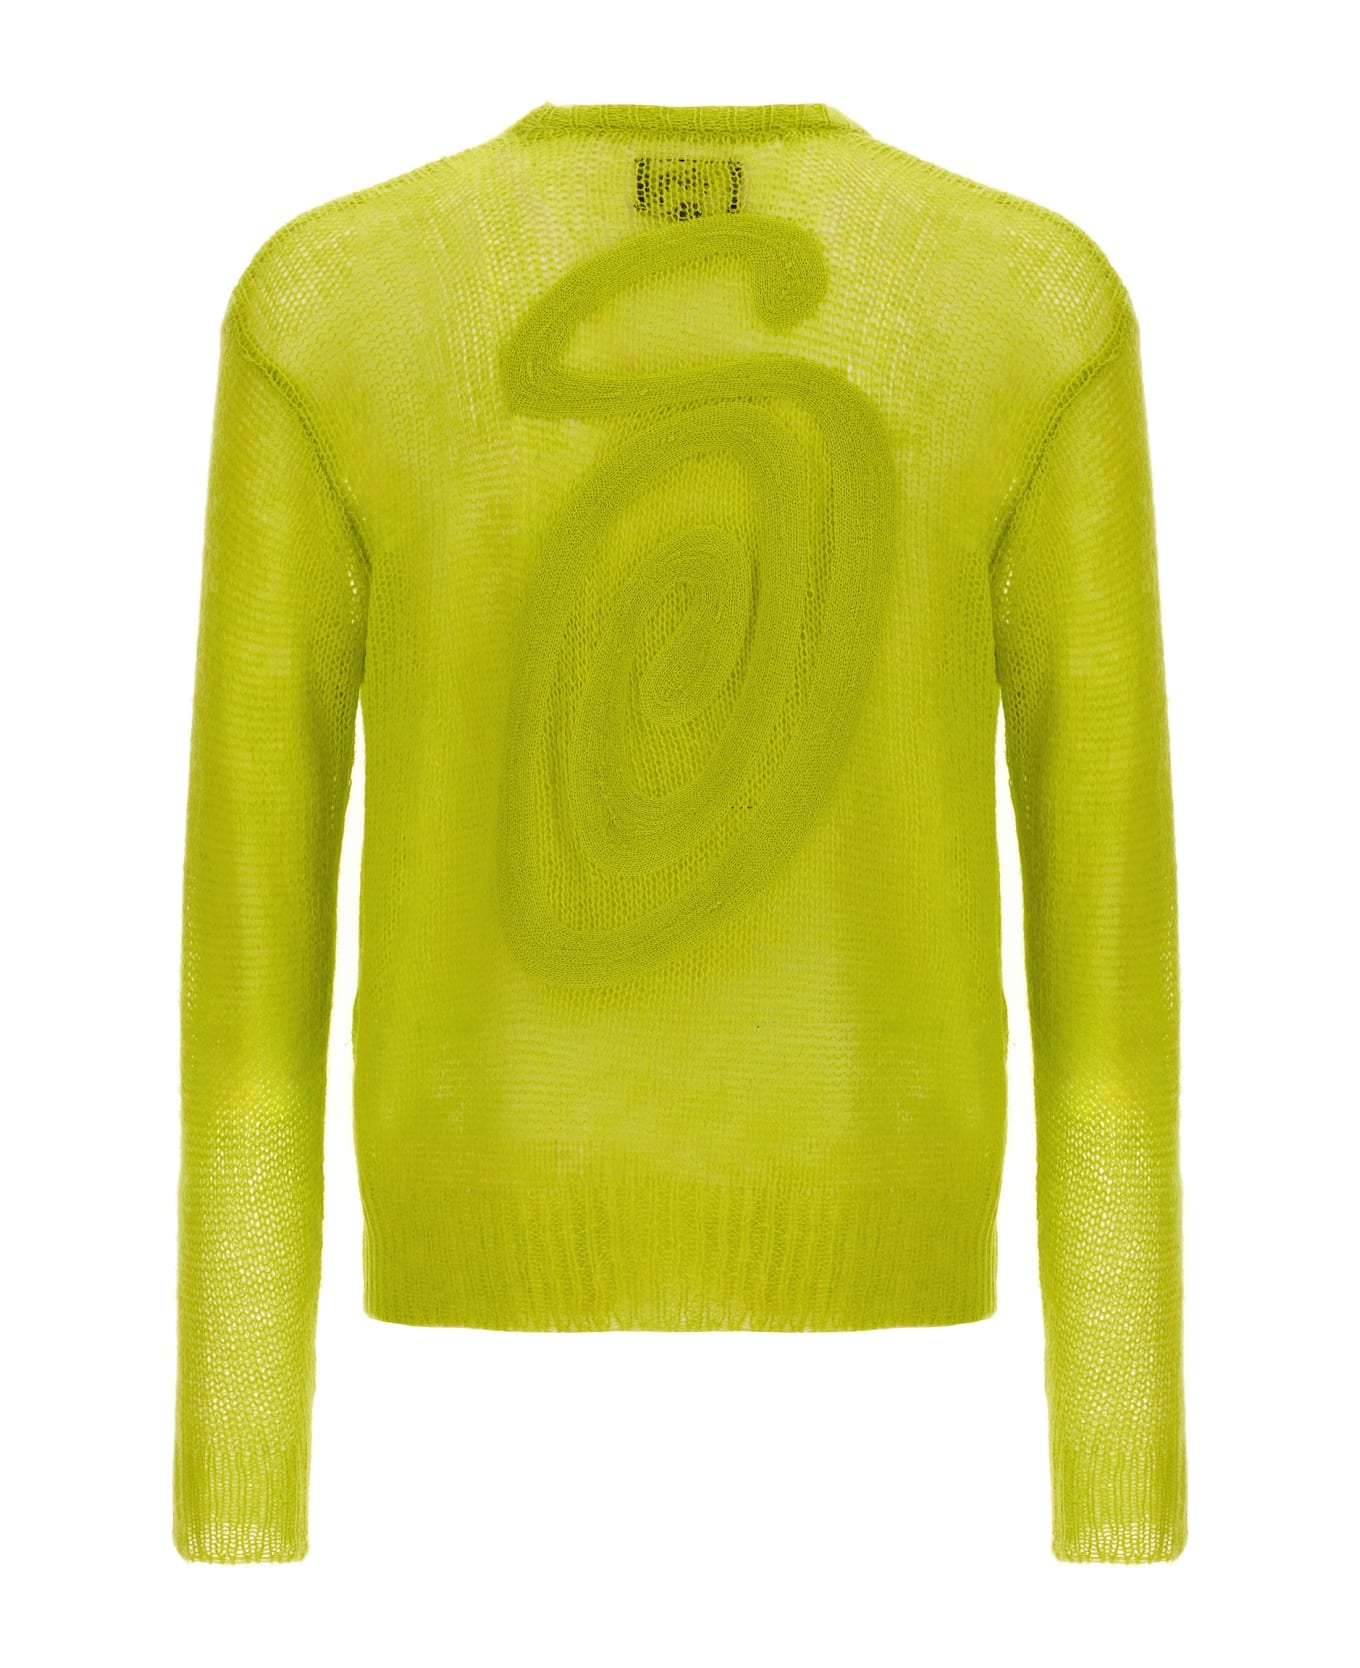 Stussy Loose Sweater - Yellow ニットウェア